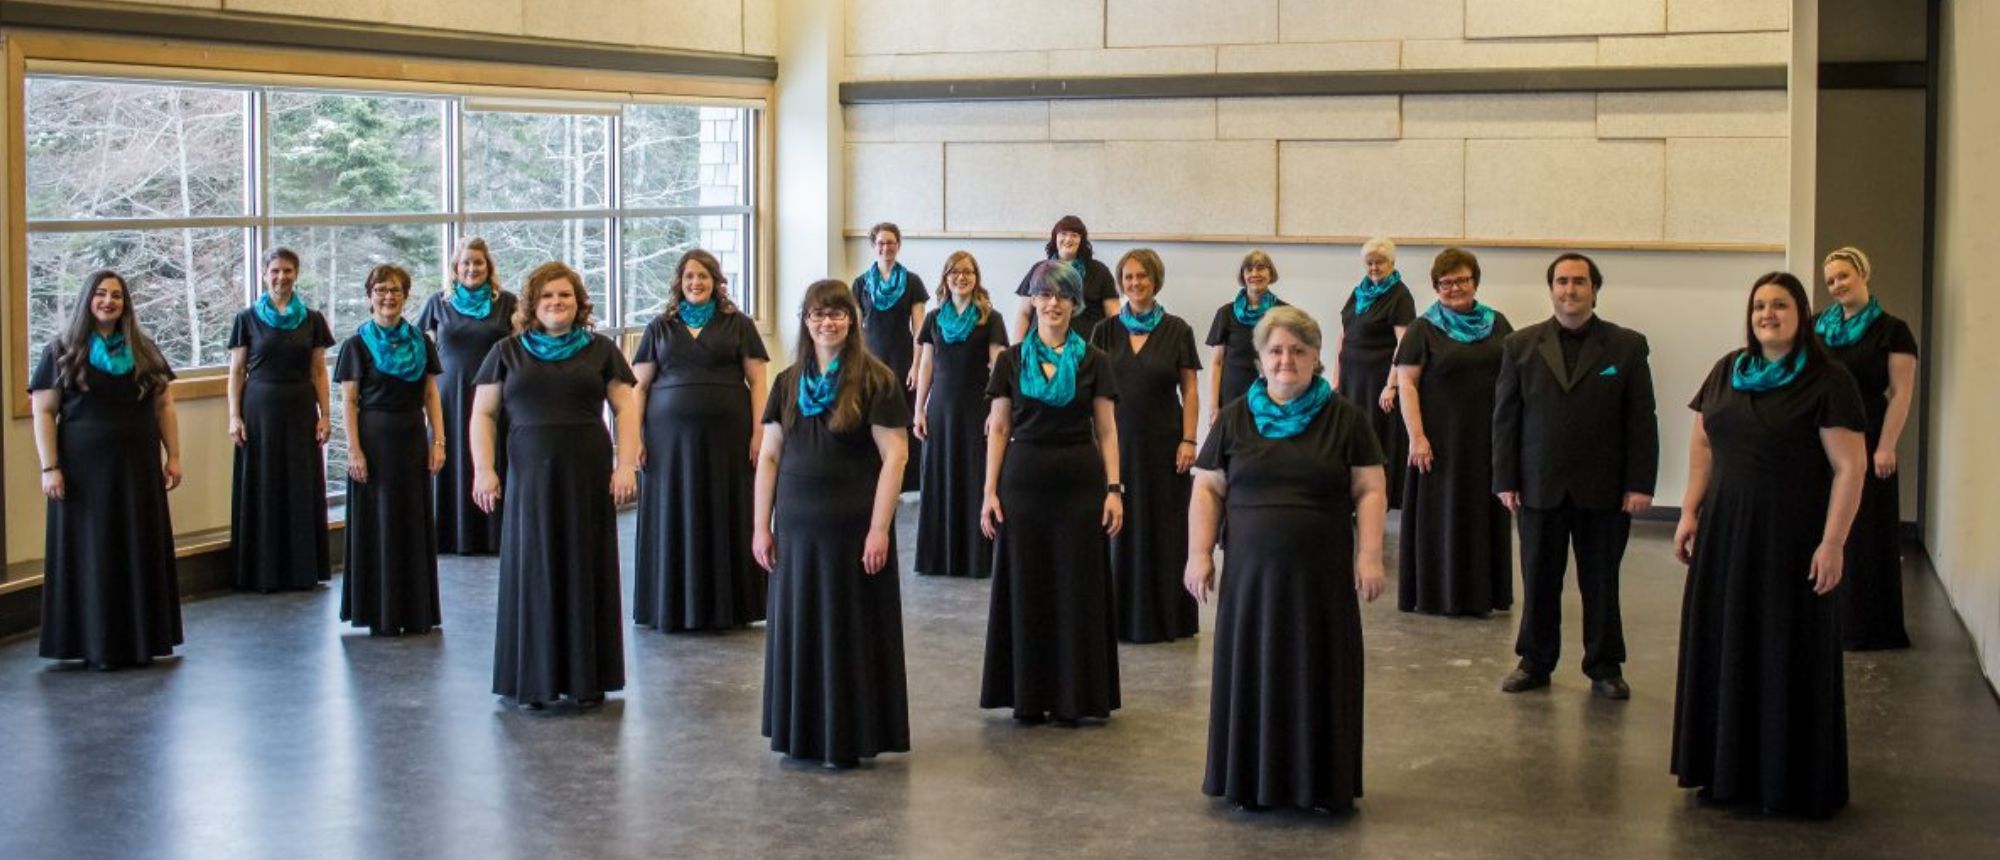 Inspiring Women – A Concert by Aurora Women’s Choir